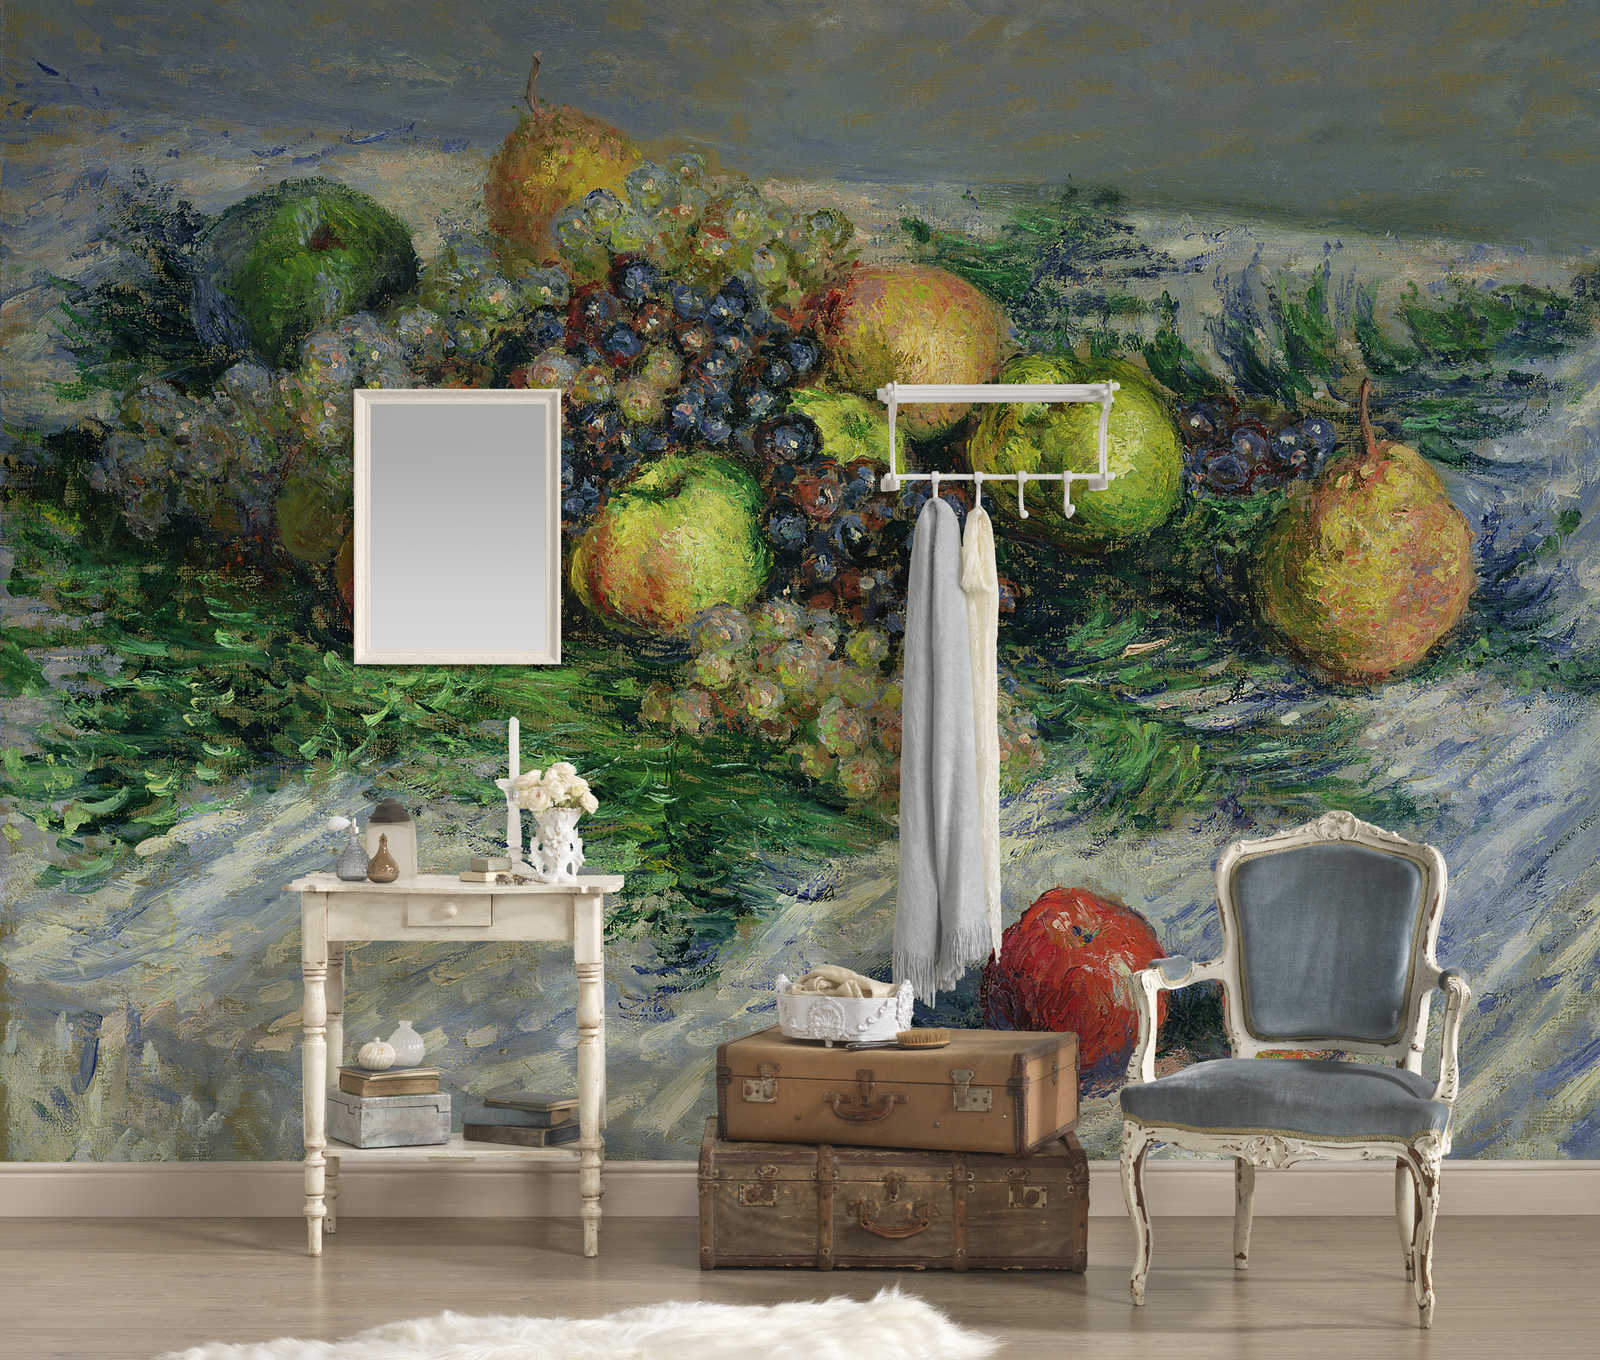             Stilleven met peren en druiven" muurschildering van Claude Monet
        